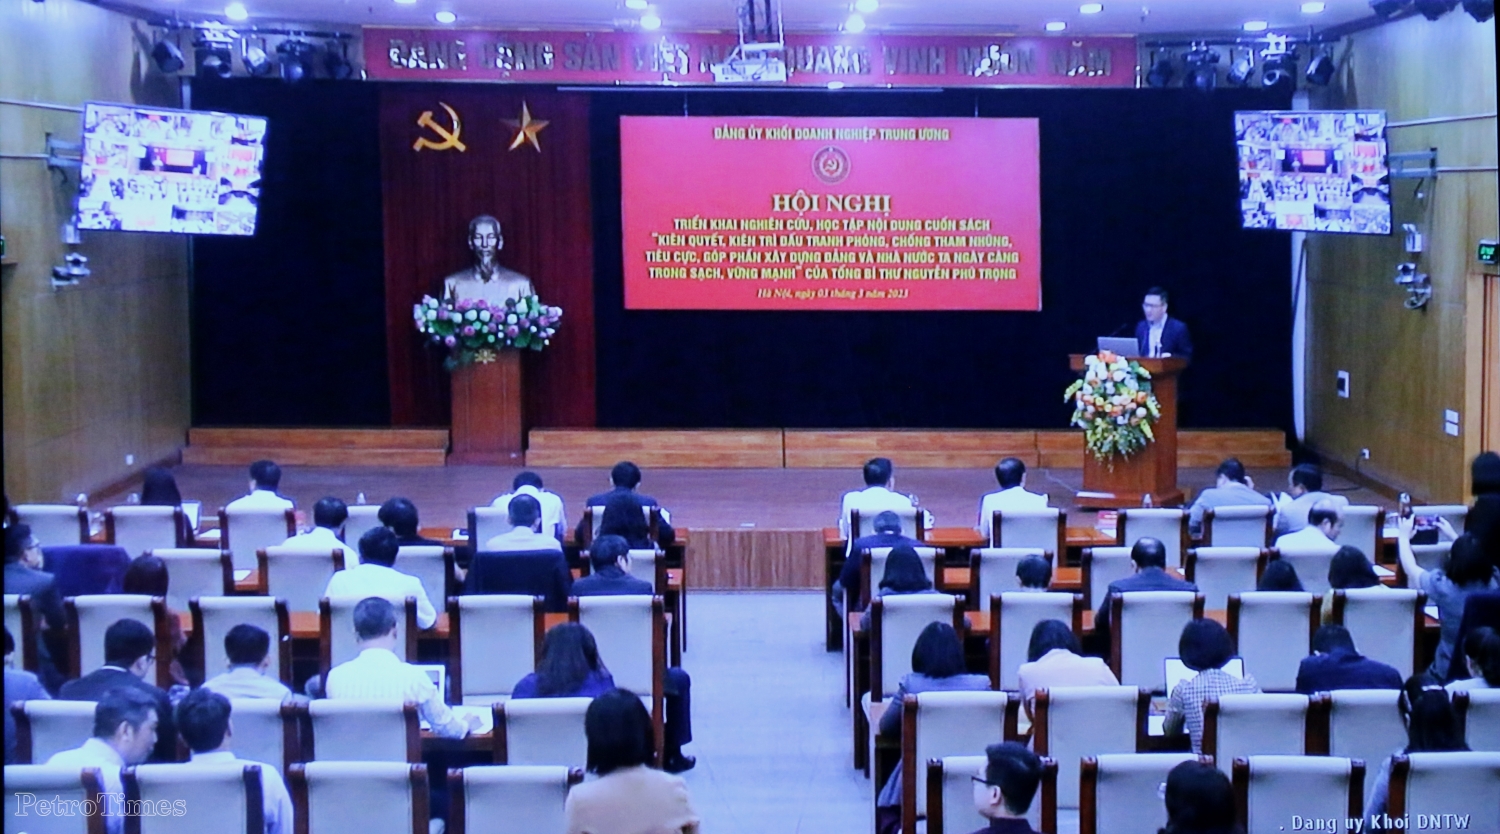 Đảng ủy Tập đoàn Dầu khí Quốc gia Việt Nam nghiên cứu, học tập nội dung cuốn sách của Tổng Bí thư về phòng, chống tham nhũng, tiêu cực